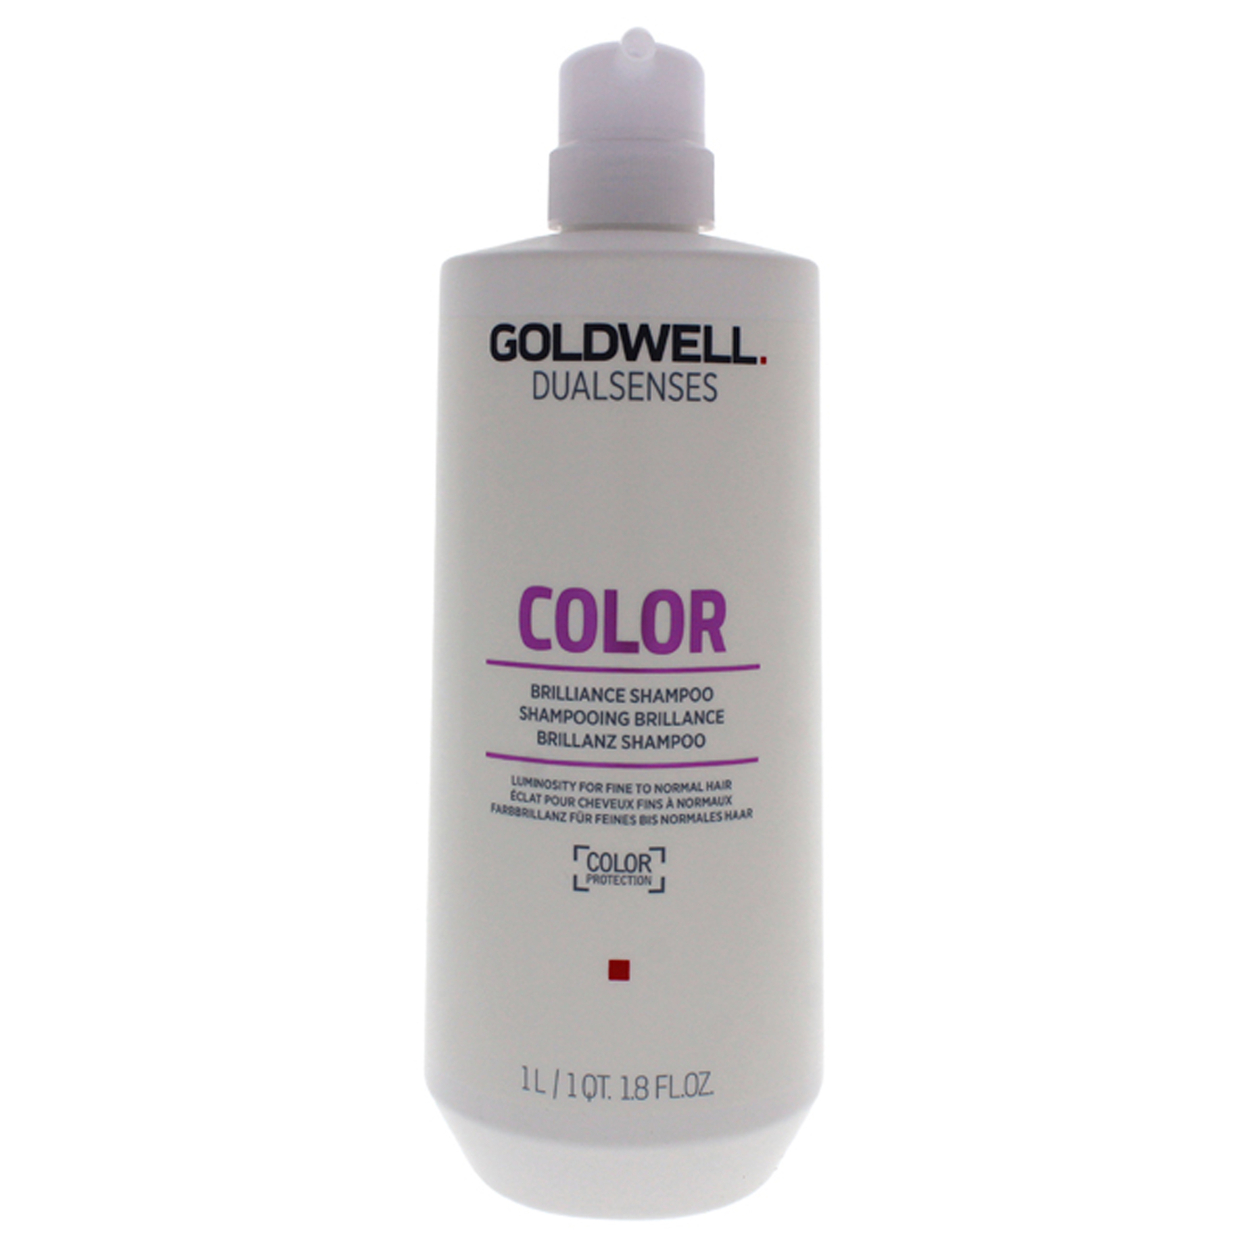 Goldwell Dualsenses Color Shampoo 34 Oz